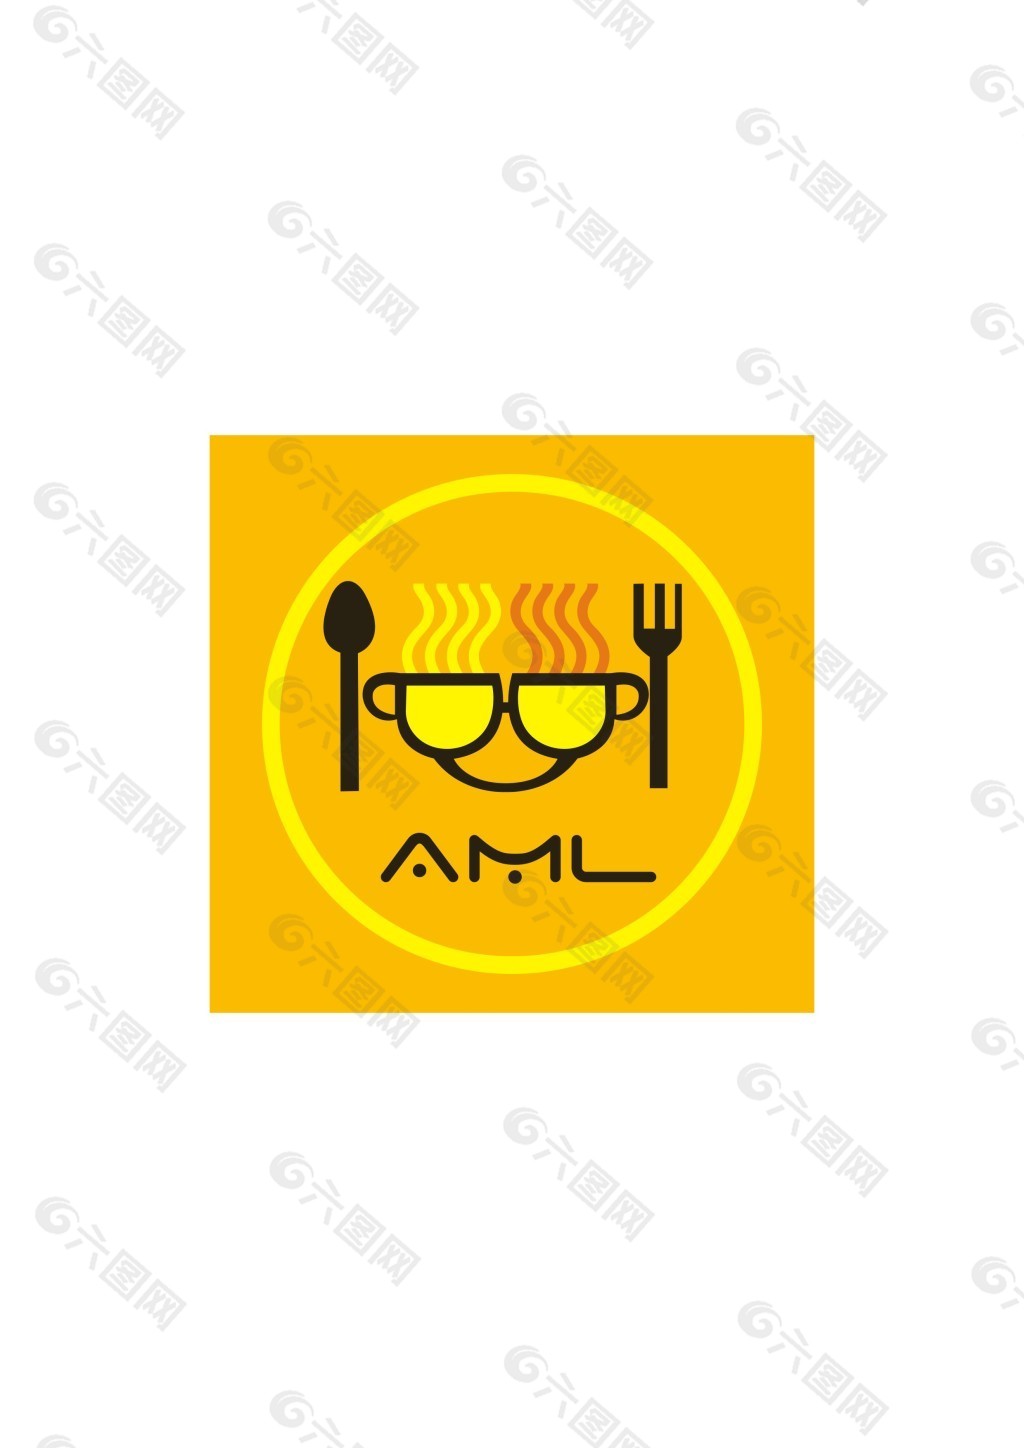 餐具公司logo设计欣赏